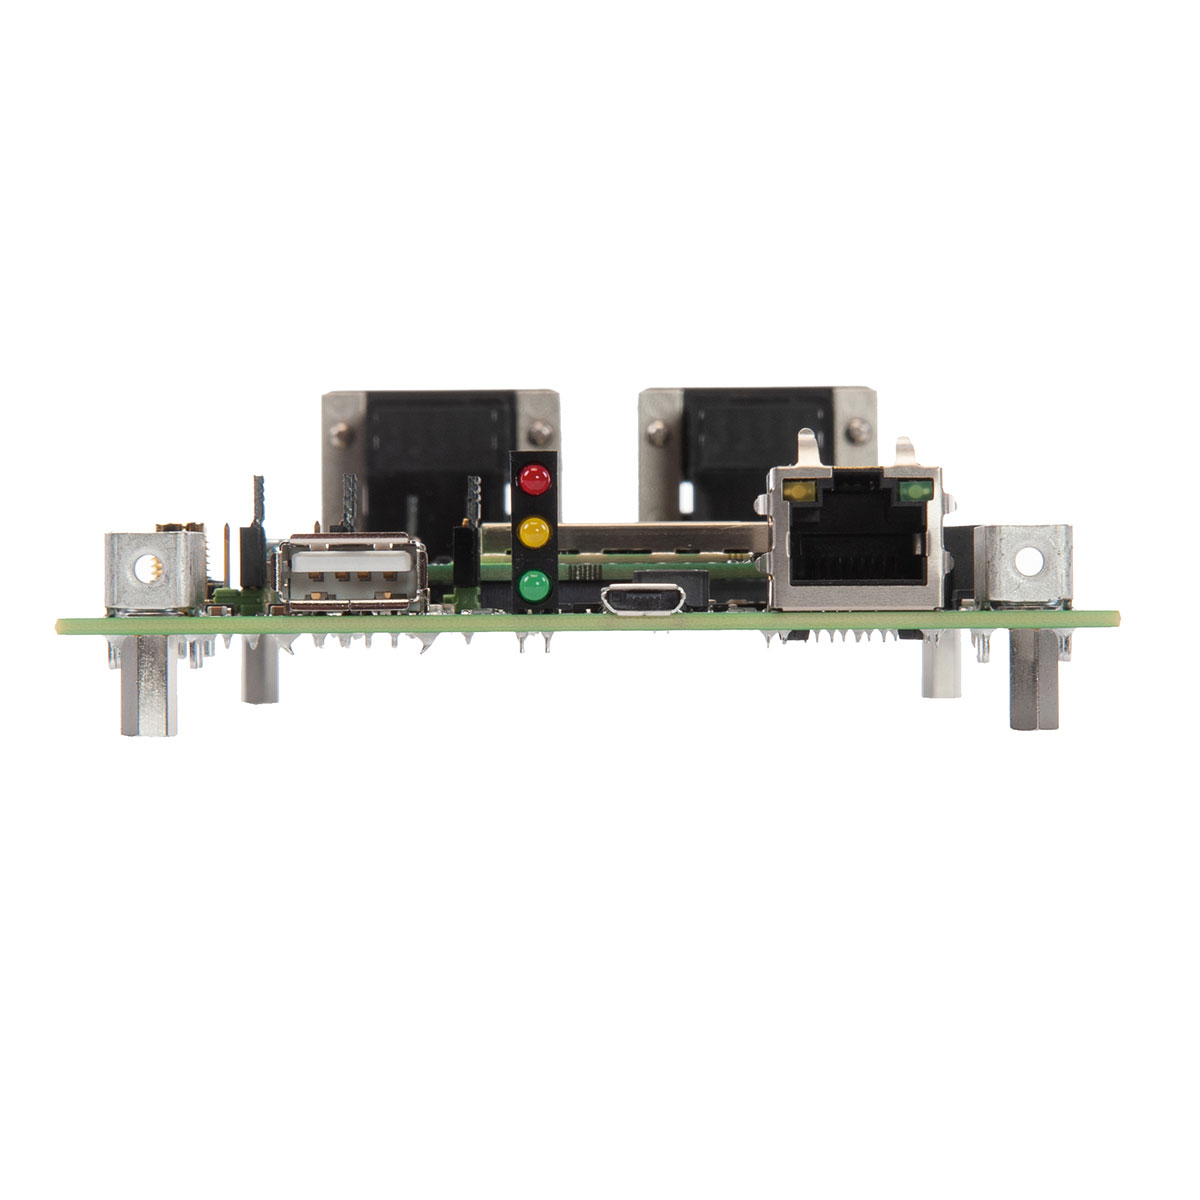 GNSS-Modul Mosaic-X5 Full Development Kit von Septentrio